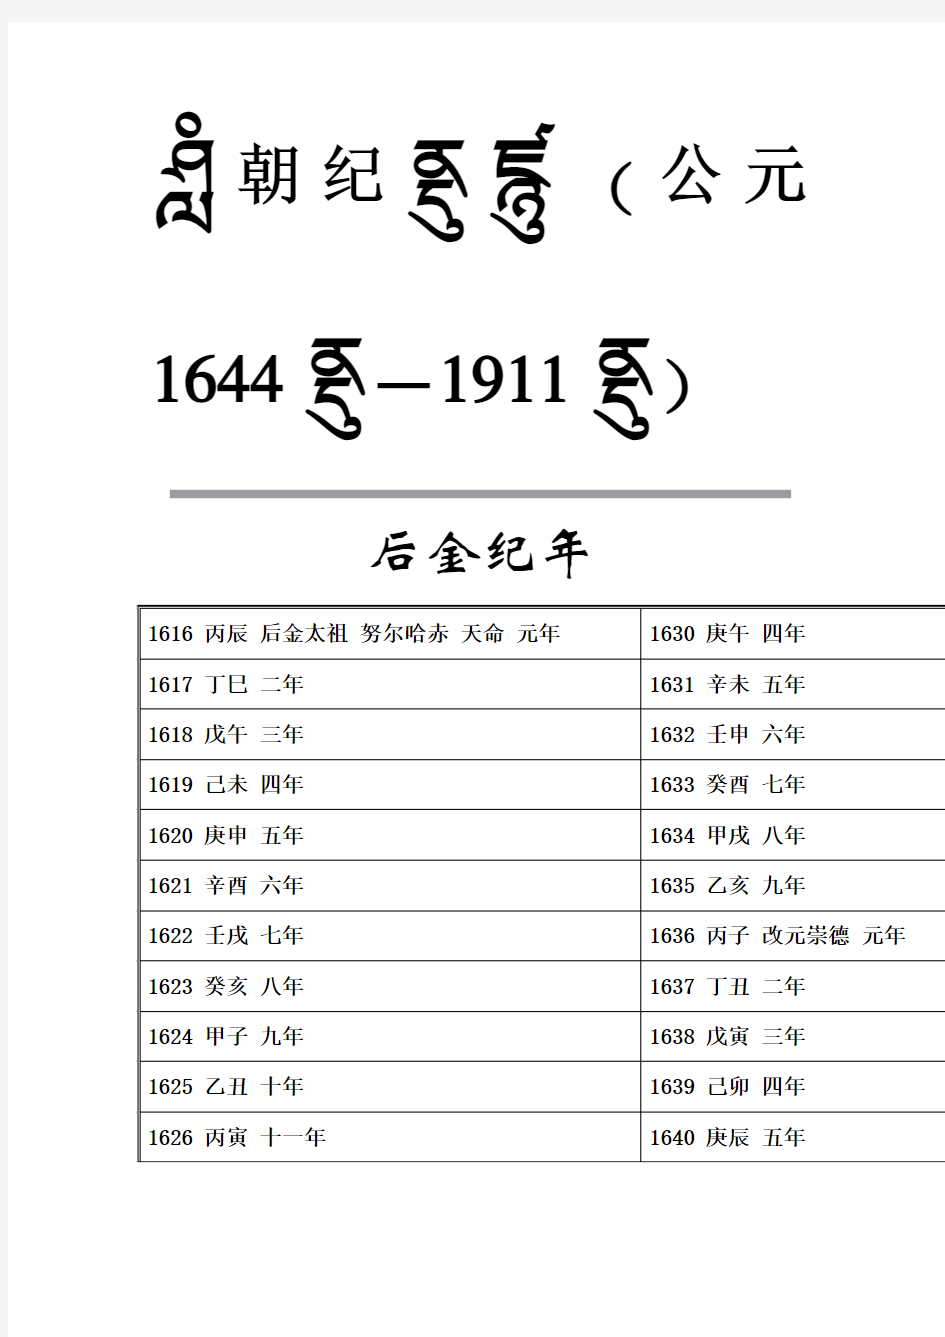 满清纪年表(公元1644年-1911年)